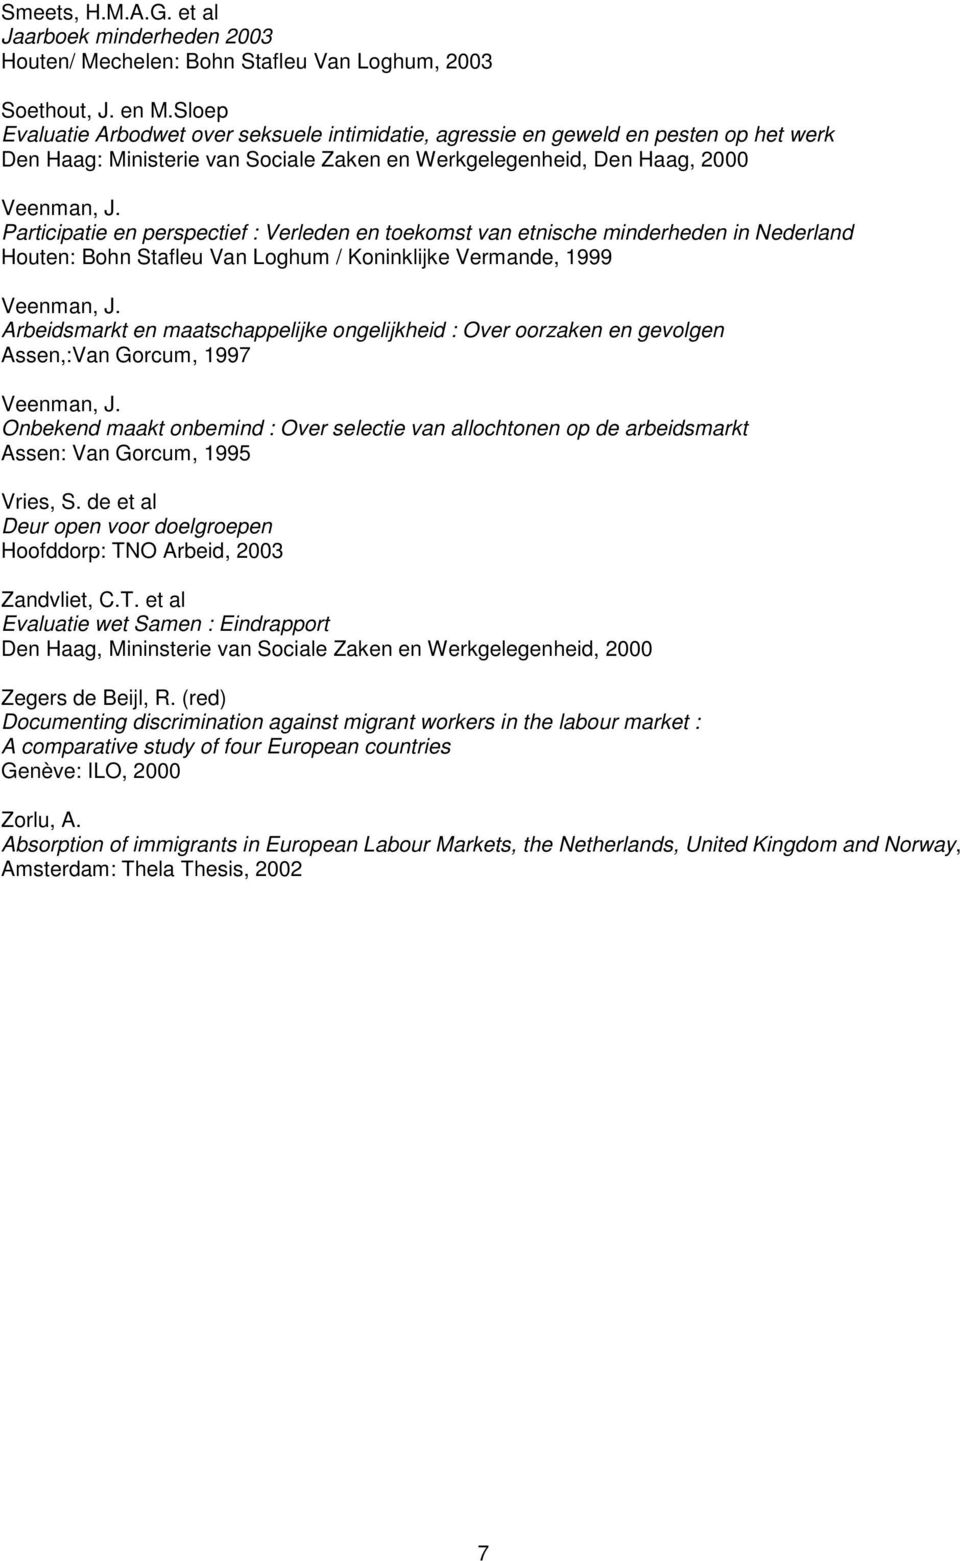 Participatie en perspectief : Verleden en toekomst van etnische minderheden in Nederland Houten: Bohn Stafleu Van Loghum / Koninklijke Vermande, 1999 Veenman, J.